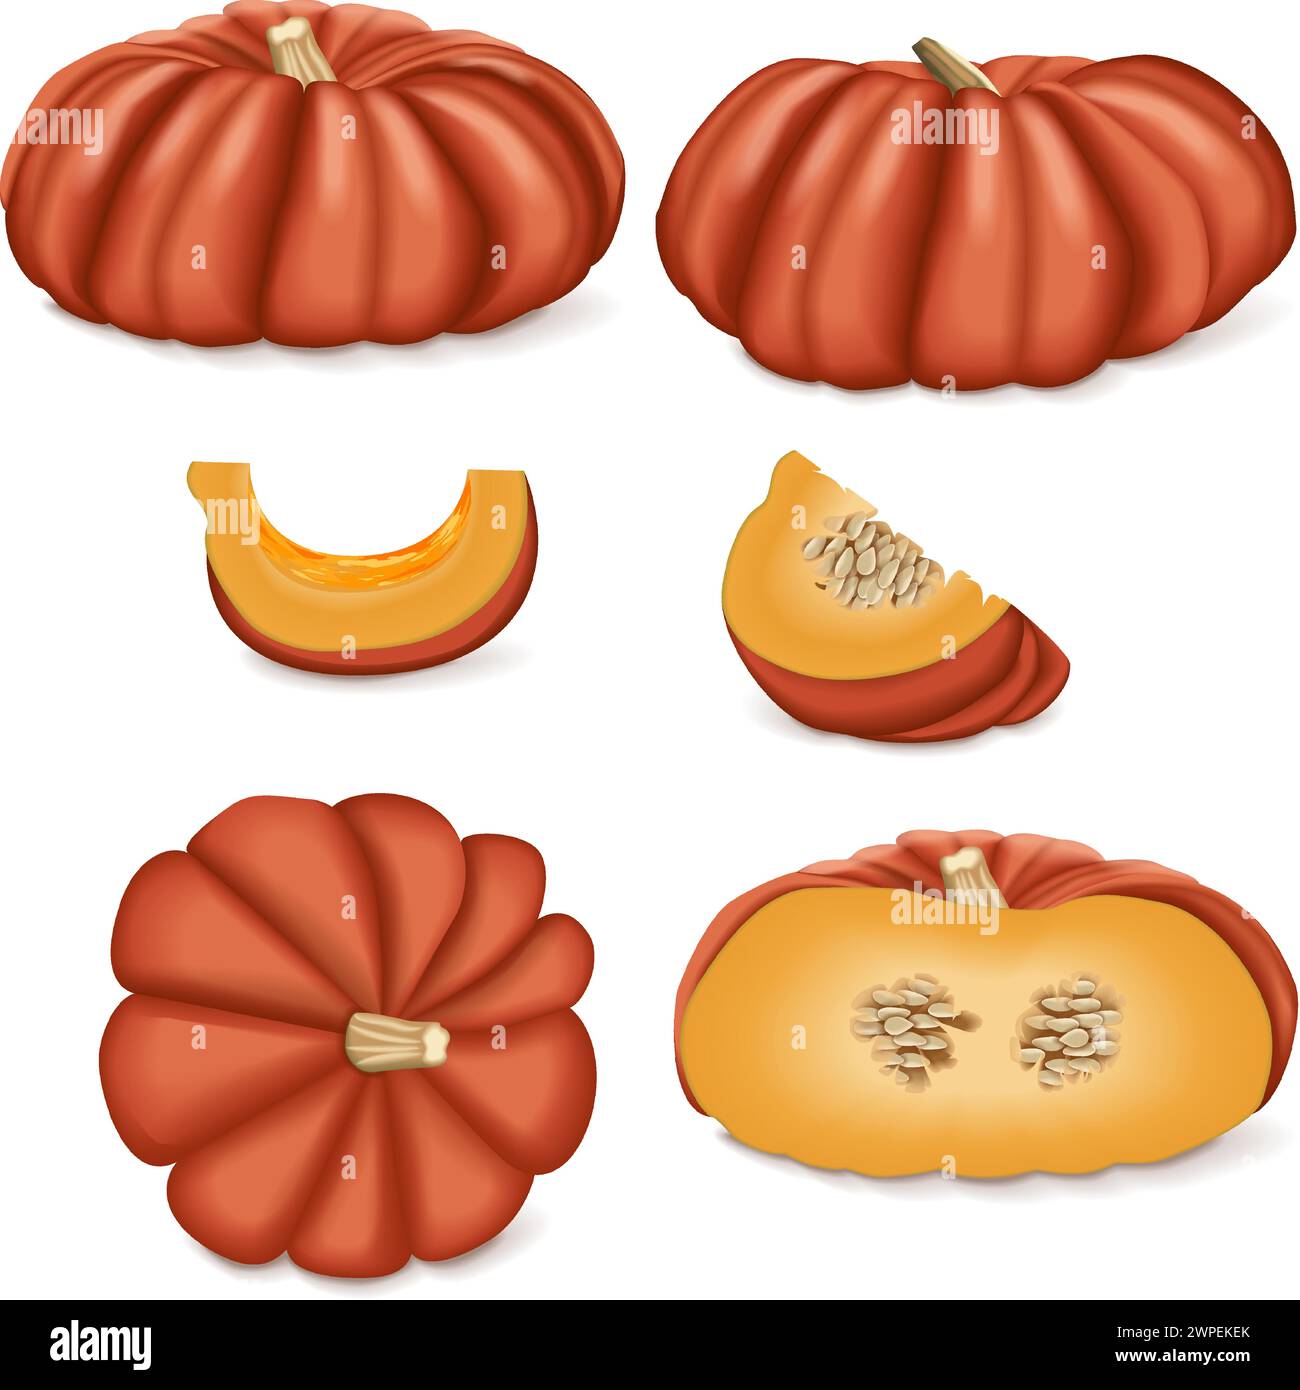 Clip art of Cinderella pumpkin. Rouge Vif D Etampes. Winter squash. Cucurbita maxima. Fruits and vegetables. Isolated vector illustration. Stock Vector